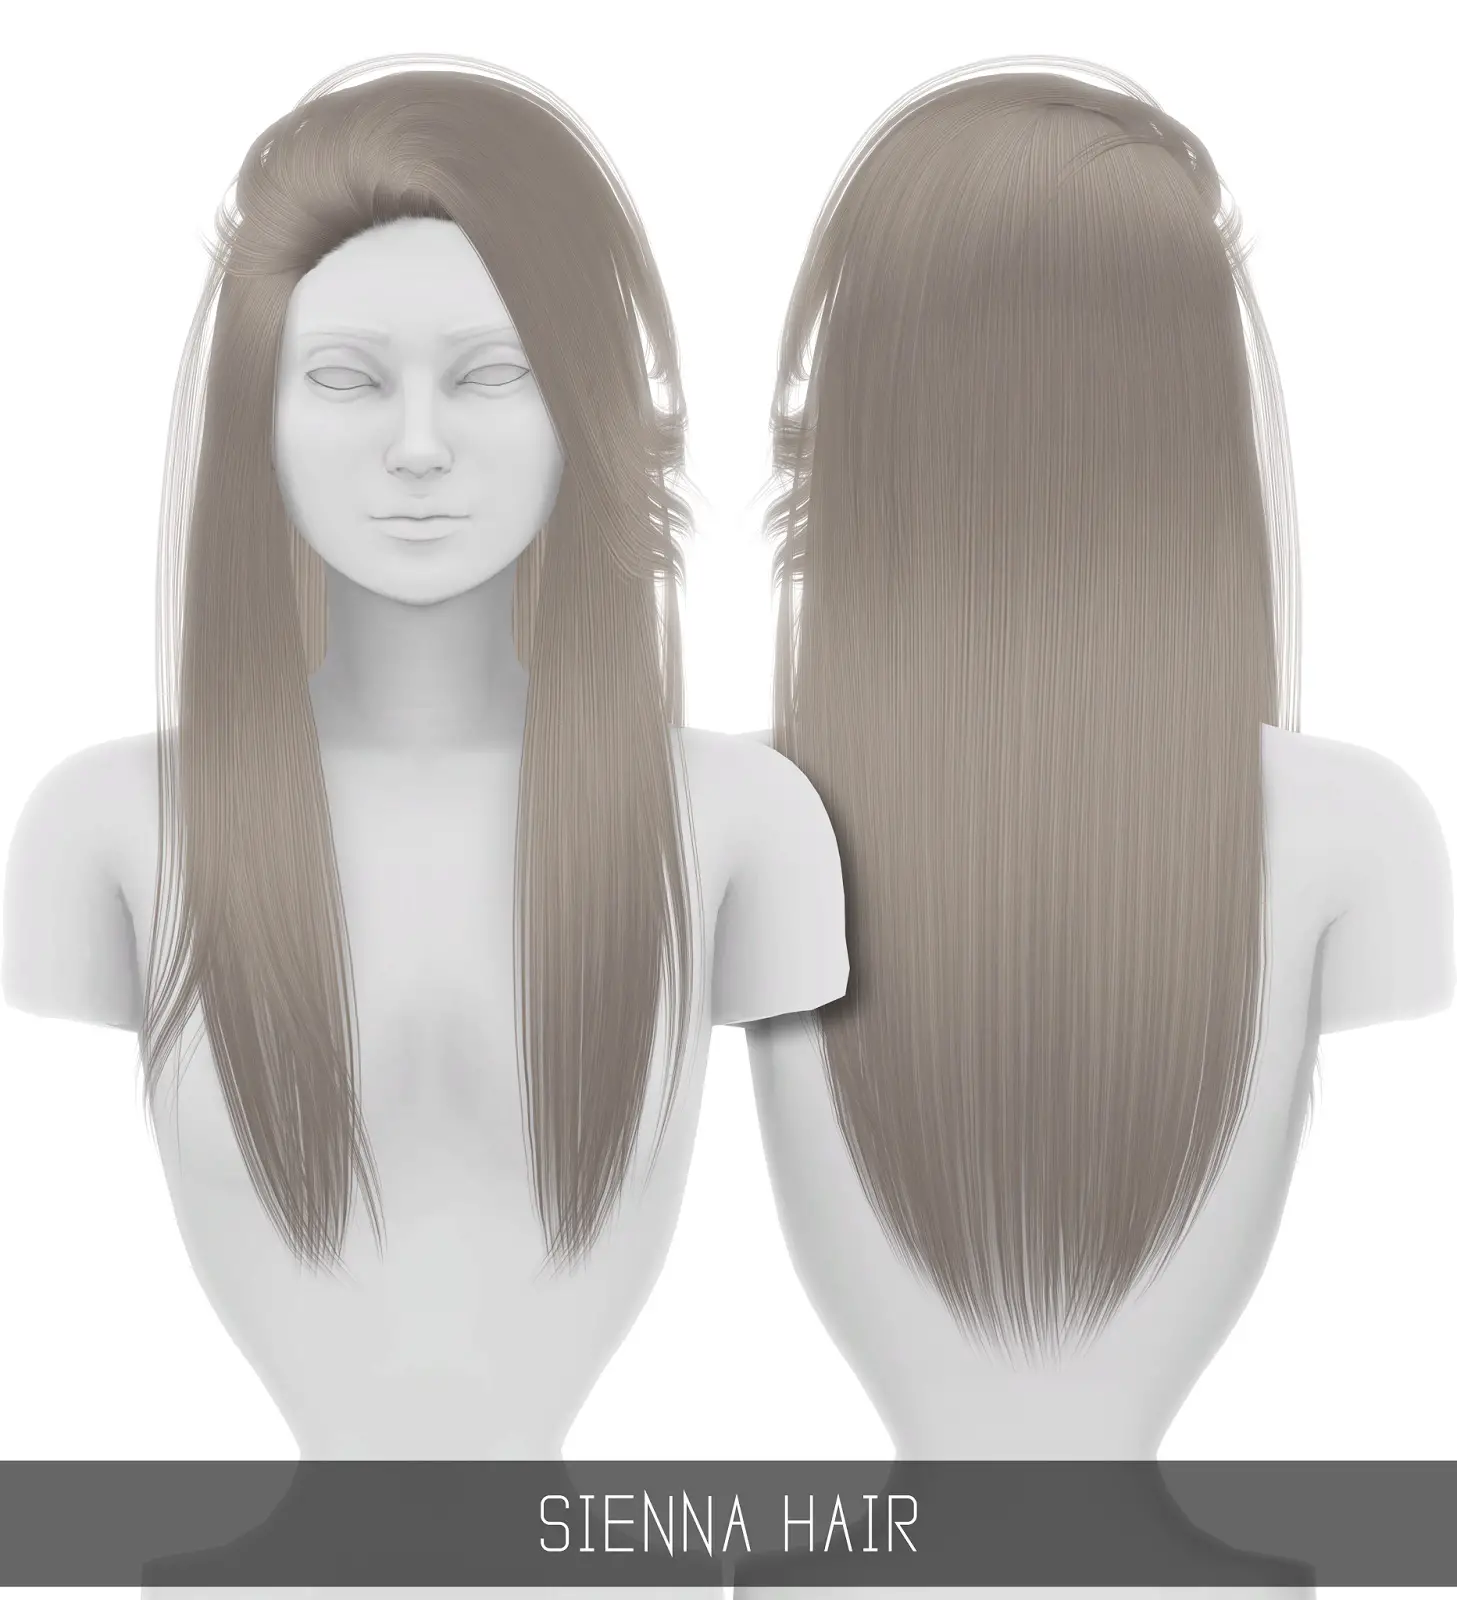 Simpliciaty: Sienna hair ~ Sims 4 Hairs